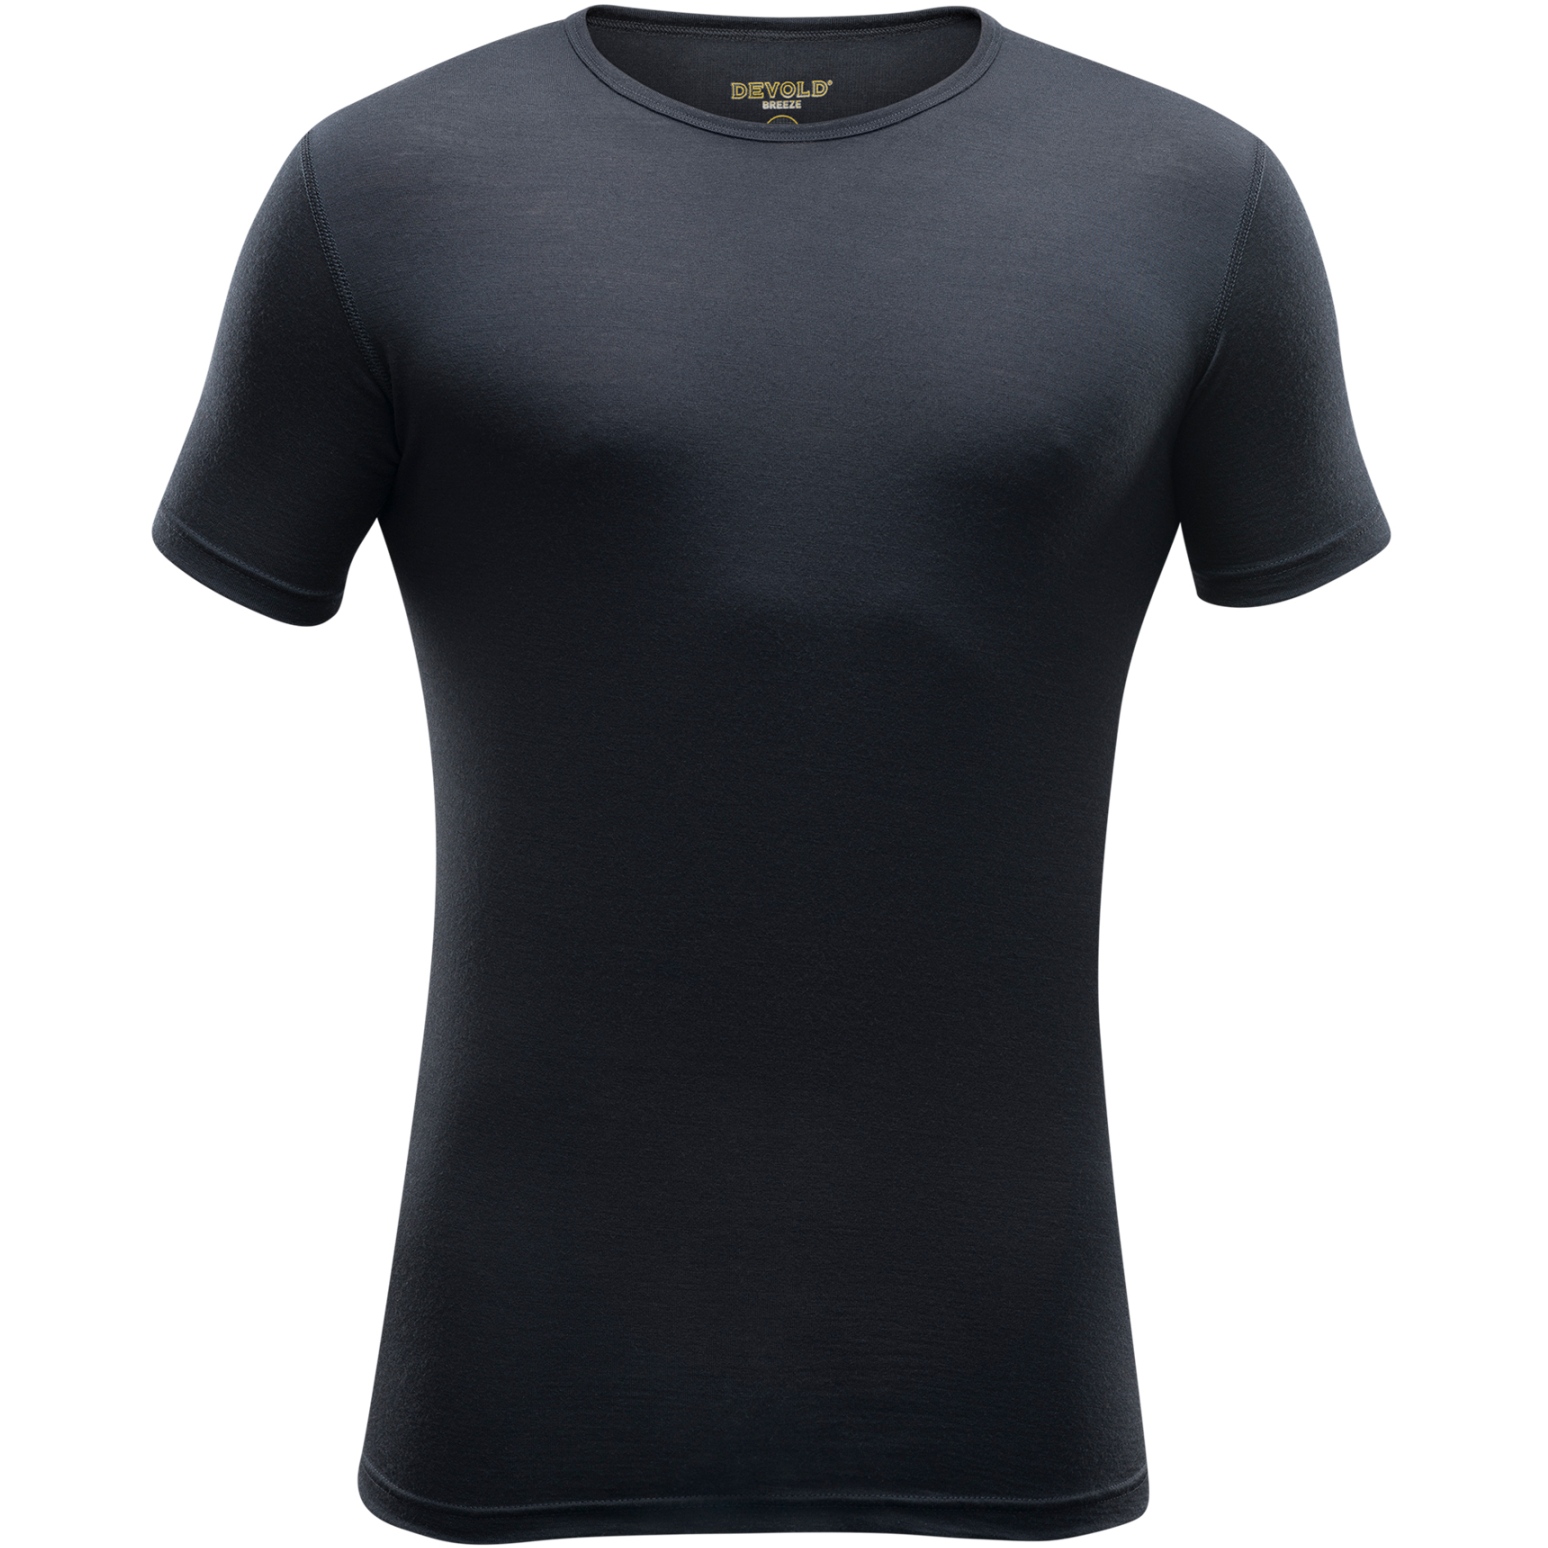 Productfoto van Devold Breeze Merino 150 T-Shirt Heren - 950A Zwart